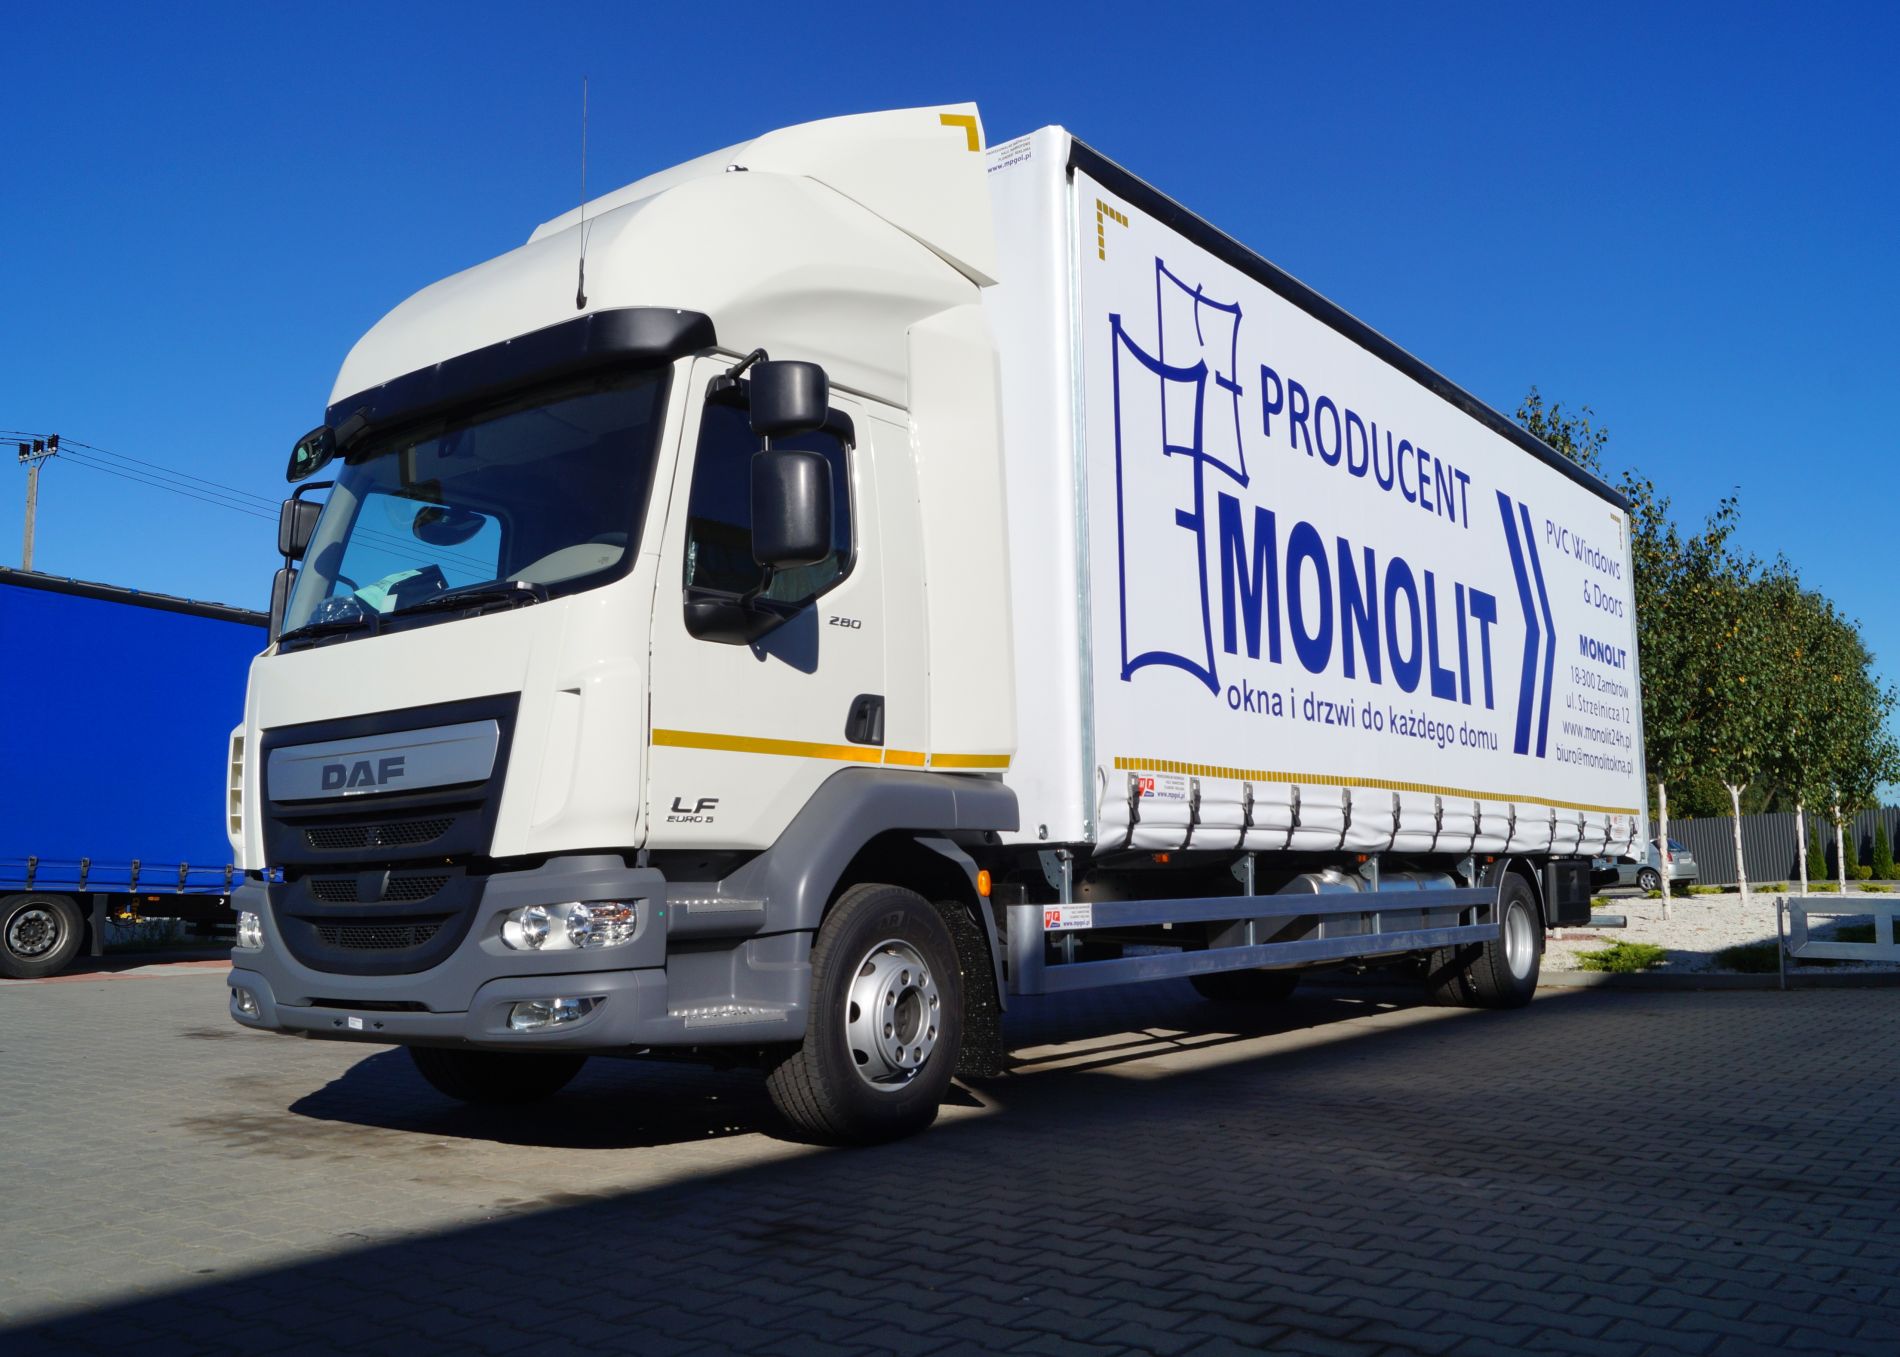 Zabudowa skrzyniowa na podwoziu samochodu ciężarowego Daf LF dla firmy Monolit.